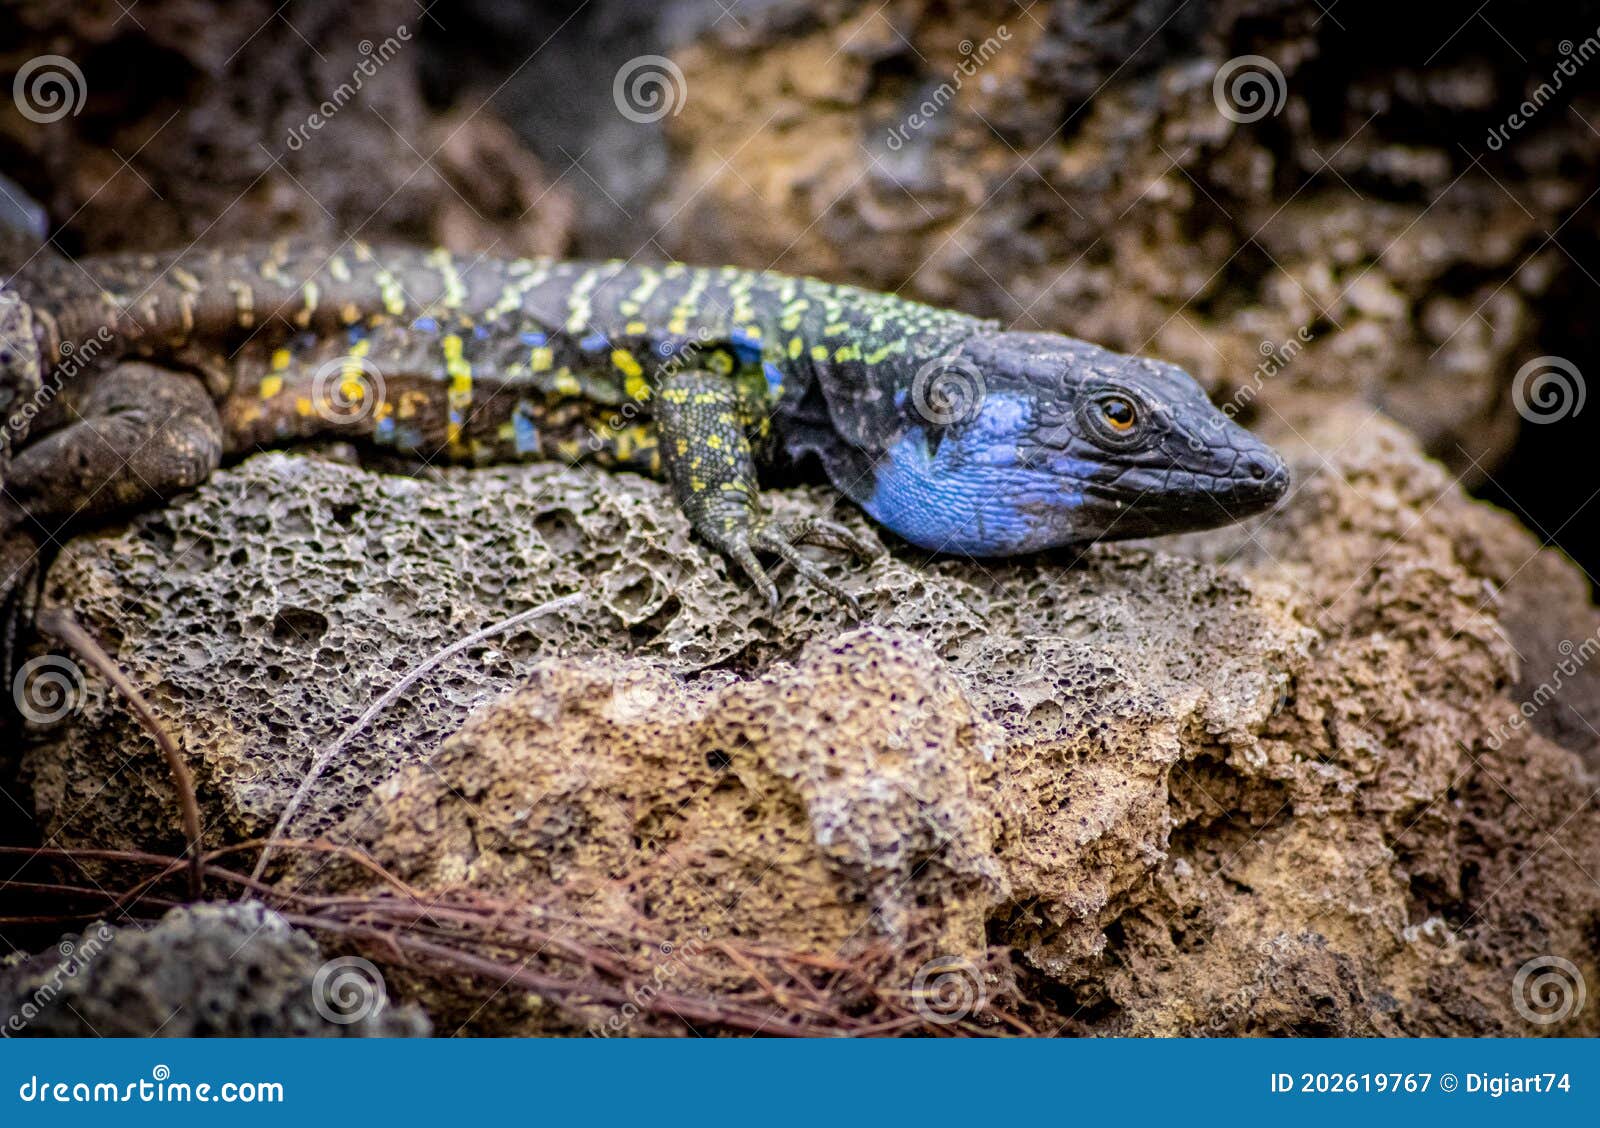 lagarto tizÃÂ³n -  typical lizard of tenerife